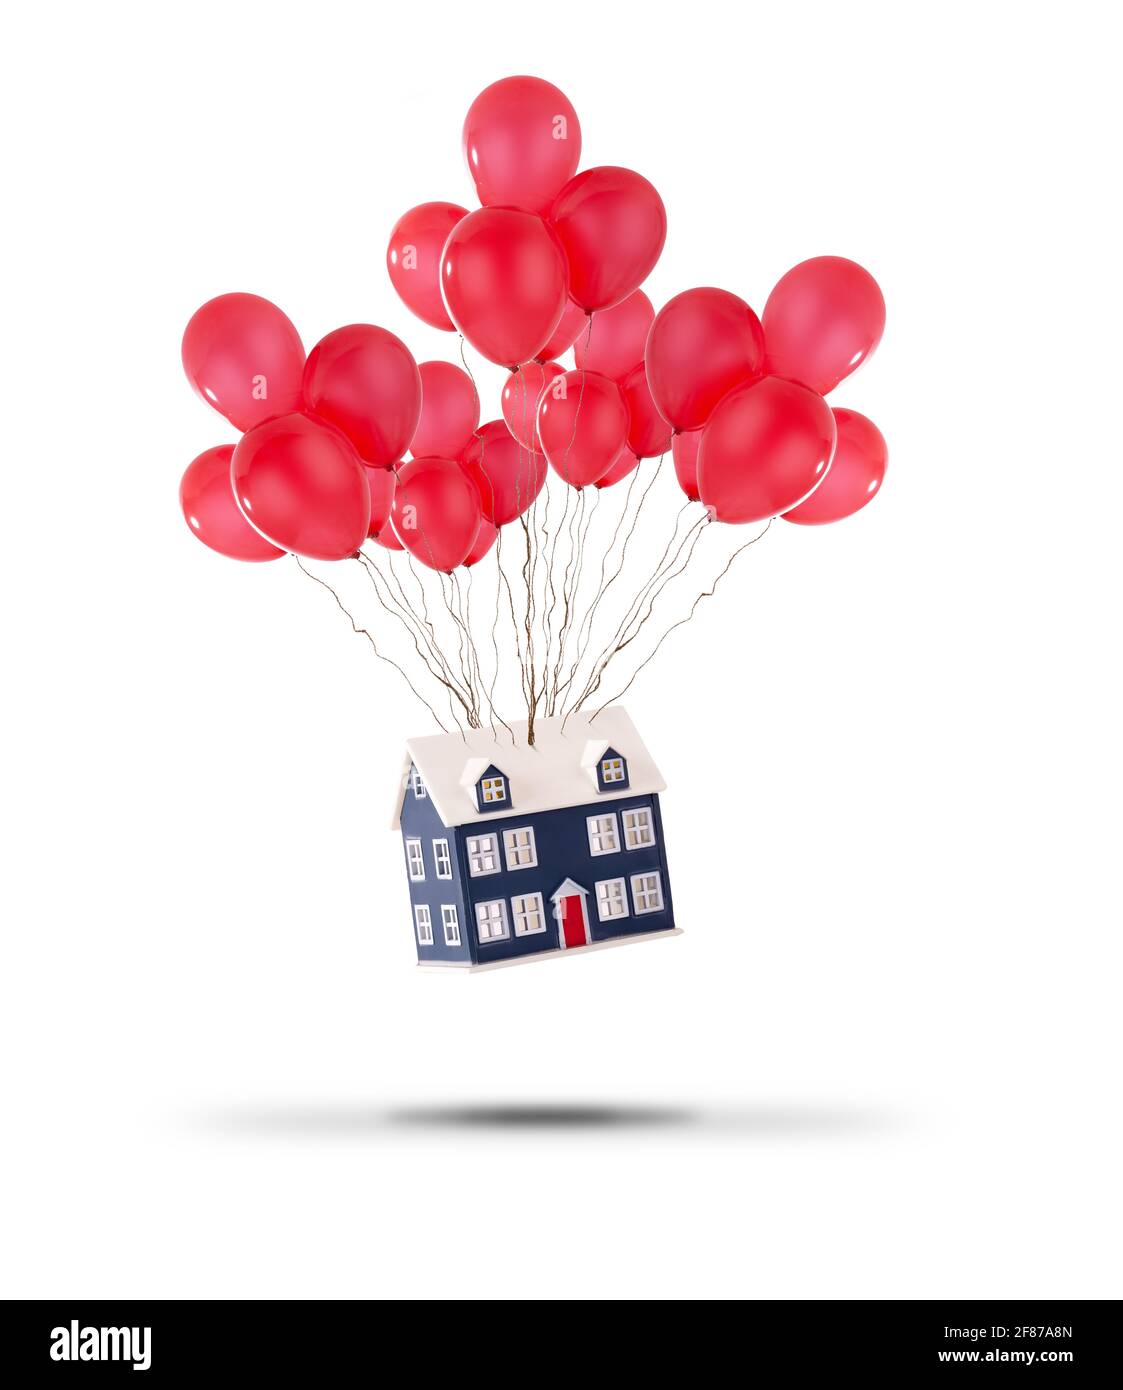 Maison de jouets soulevée avec des ballons rouges isolés sur un fond blanc. Prix de l'immobilier en hausse et déménagement concept Banque D'Images